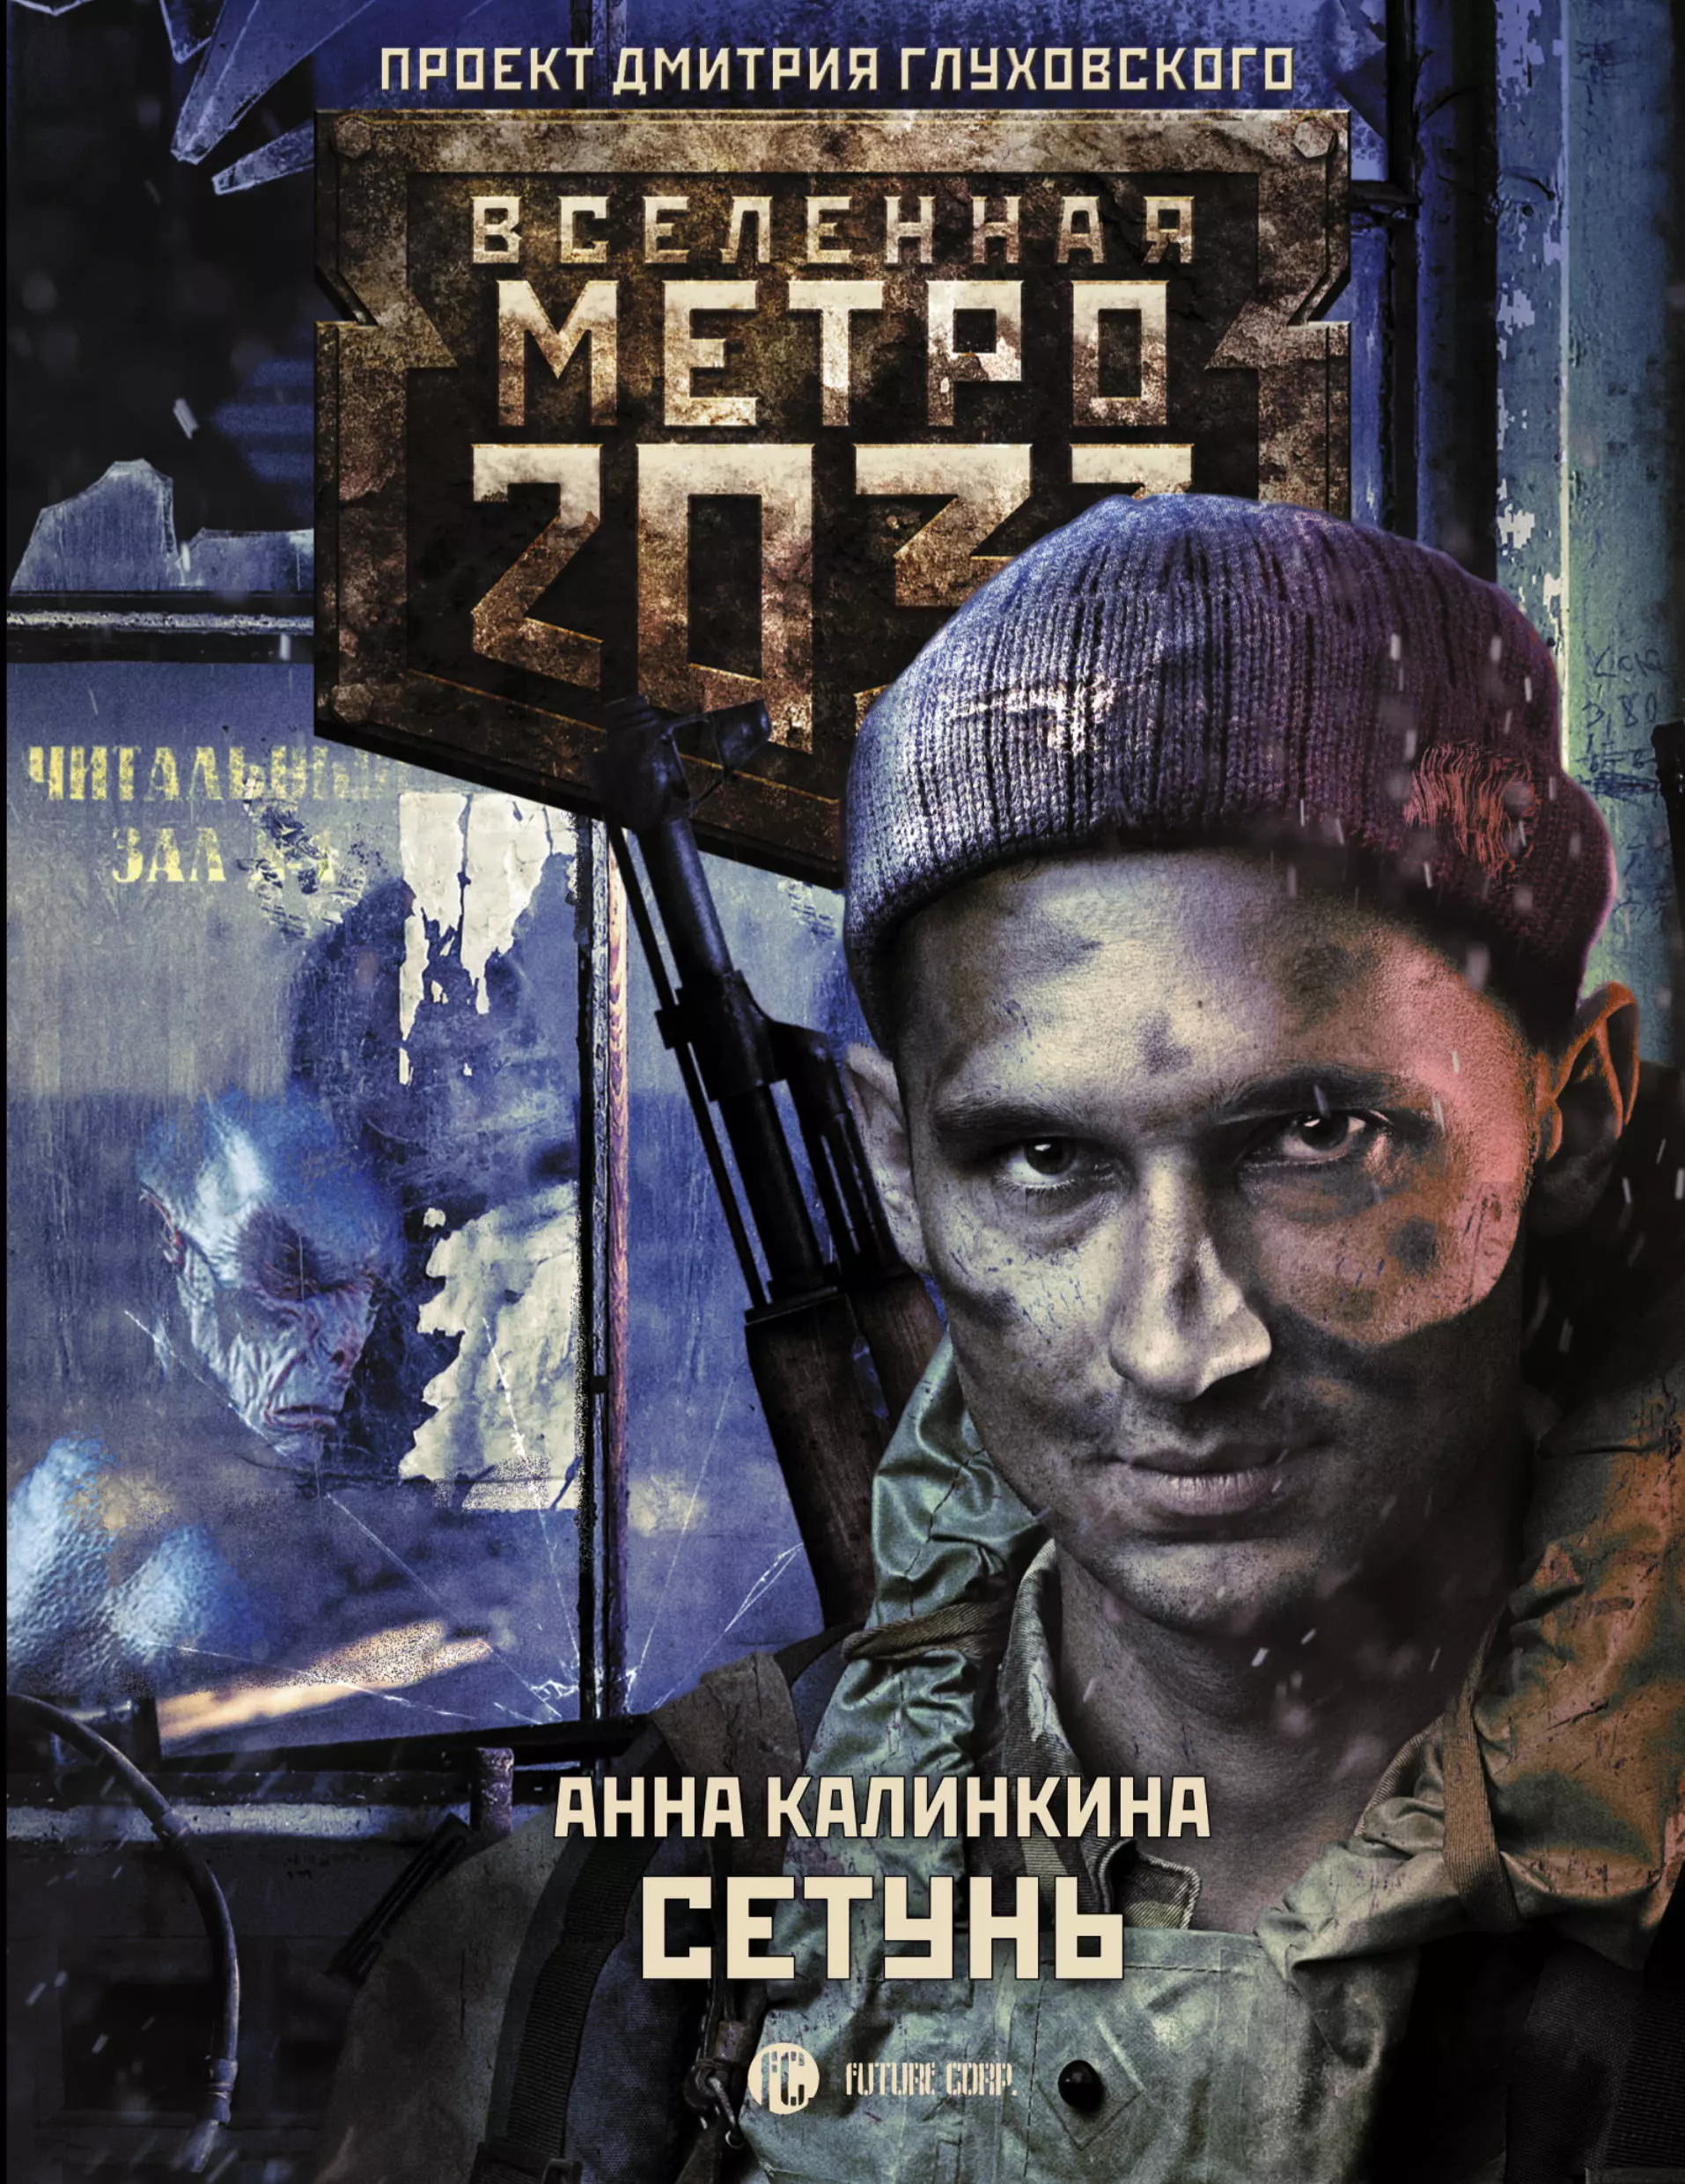 Калинкина Анна Метро 2033: Сетунь метро 2033 калинкина станция призрак на cd диске